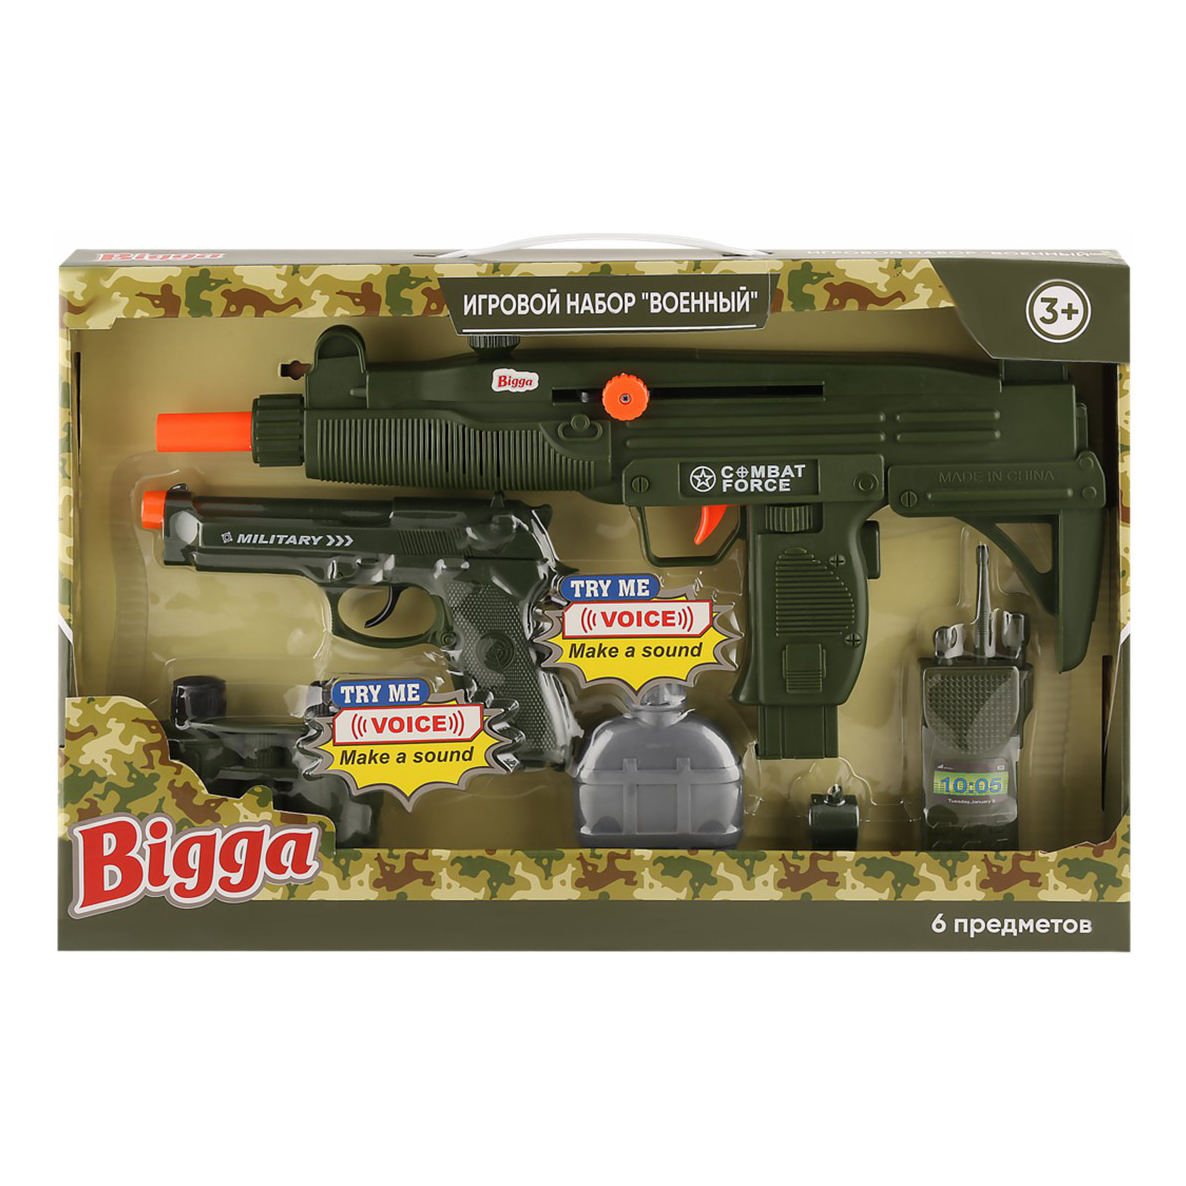 Игрушечный набор оружия Военный Bigga 6 предметов